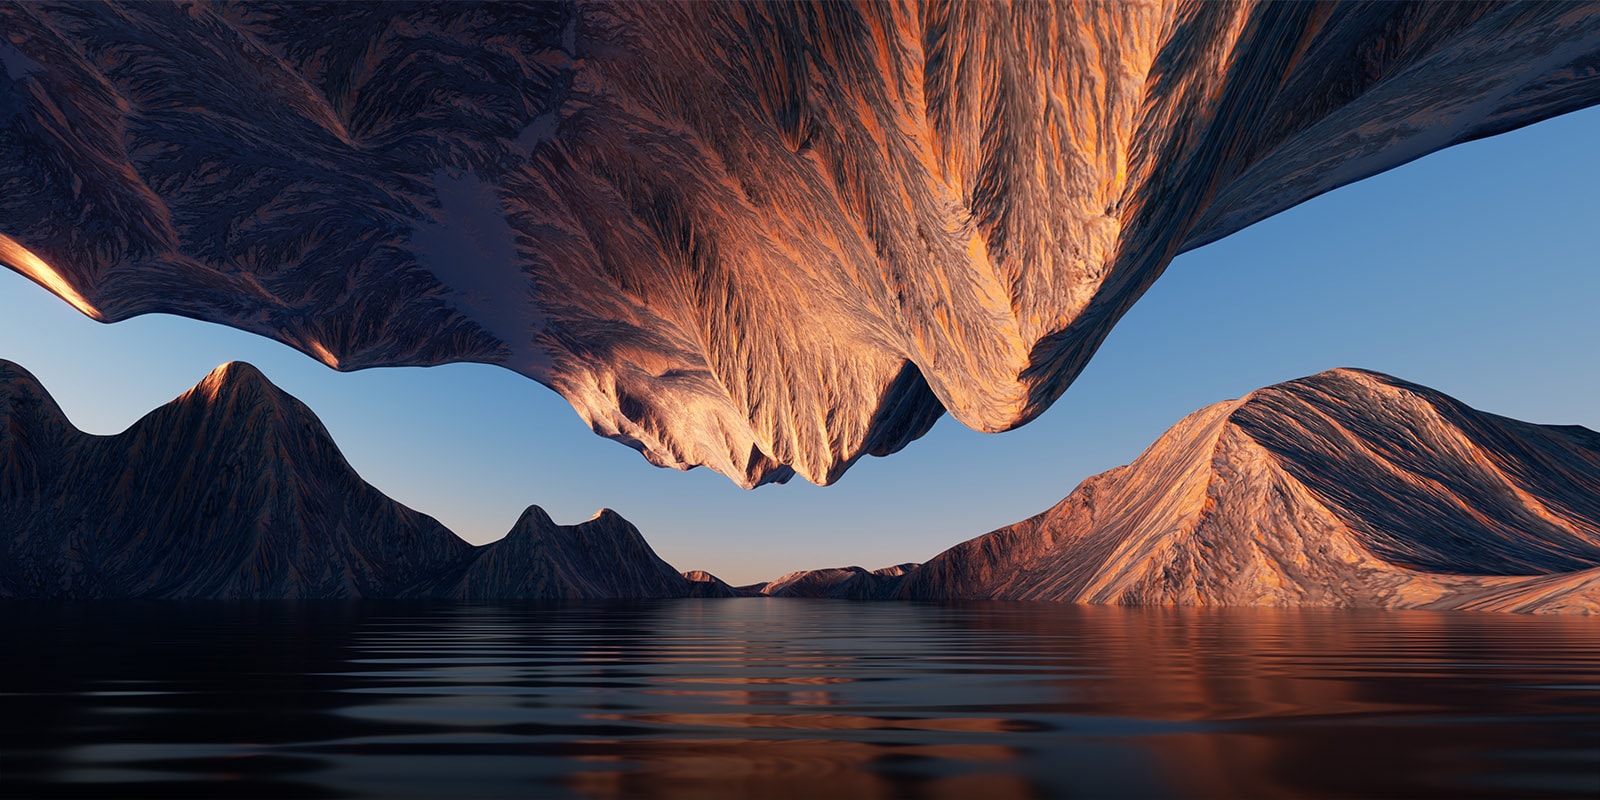 Slike prirode sa stenovitom planinom okrenute jedna ka drugoj odozgo i odozdo prikazuju kontrast i detalje.